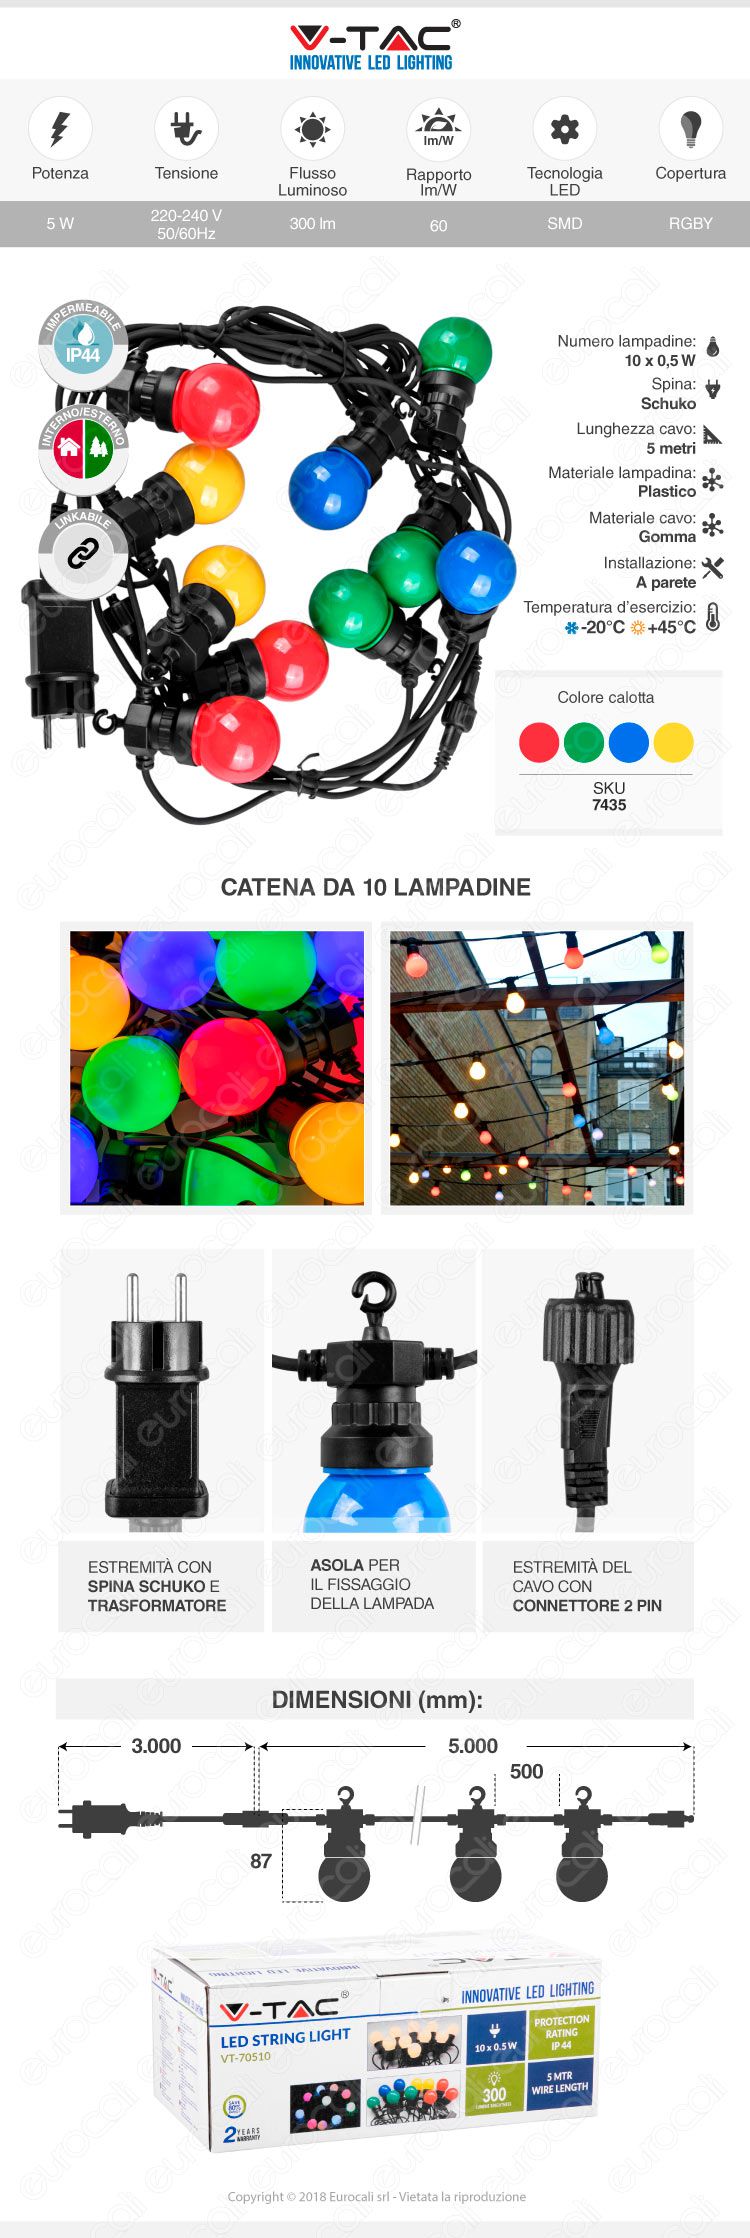 catena lampadine LED V-tac VT-70510